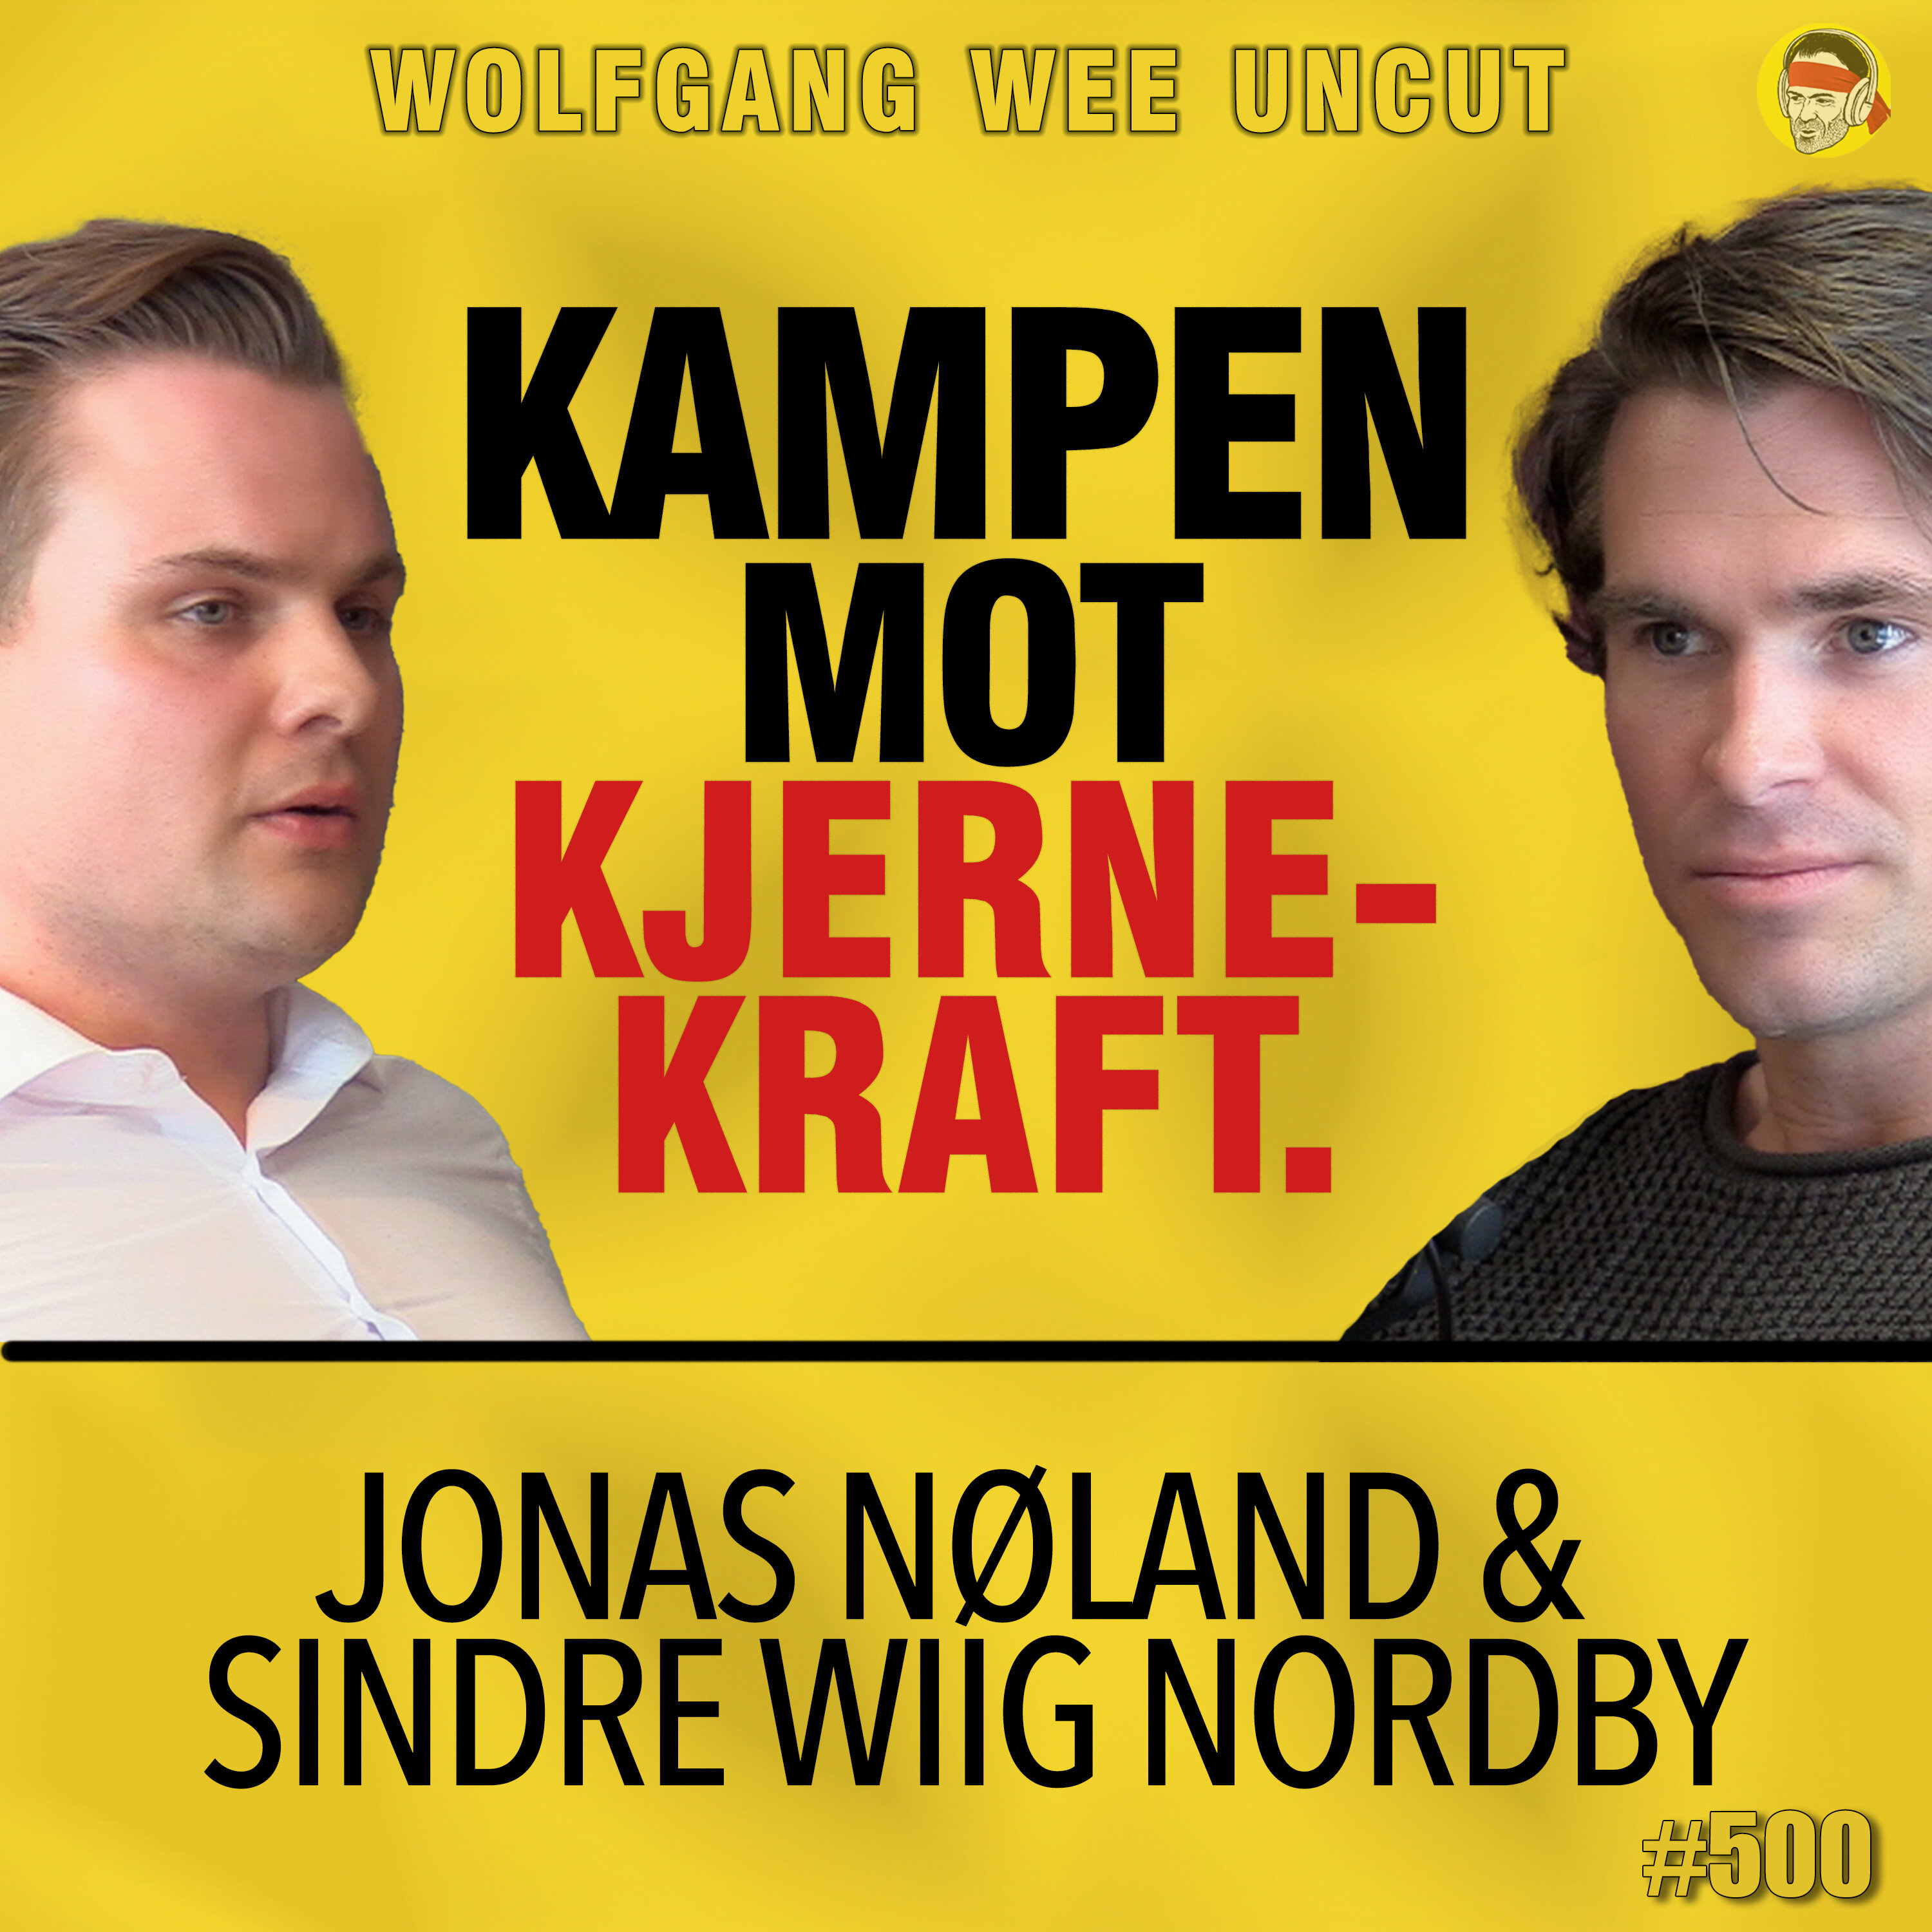 Sindre Wiig Nordby & Jonas Nøland | Kampen Mot Kjernekraft, NTNU-Skandalen, Vindkraft Statnett, Grønne Skiftet